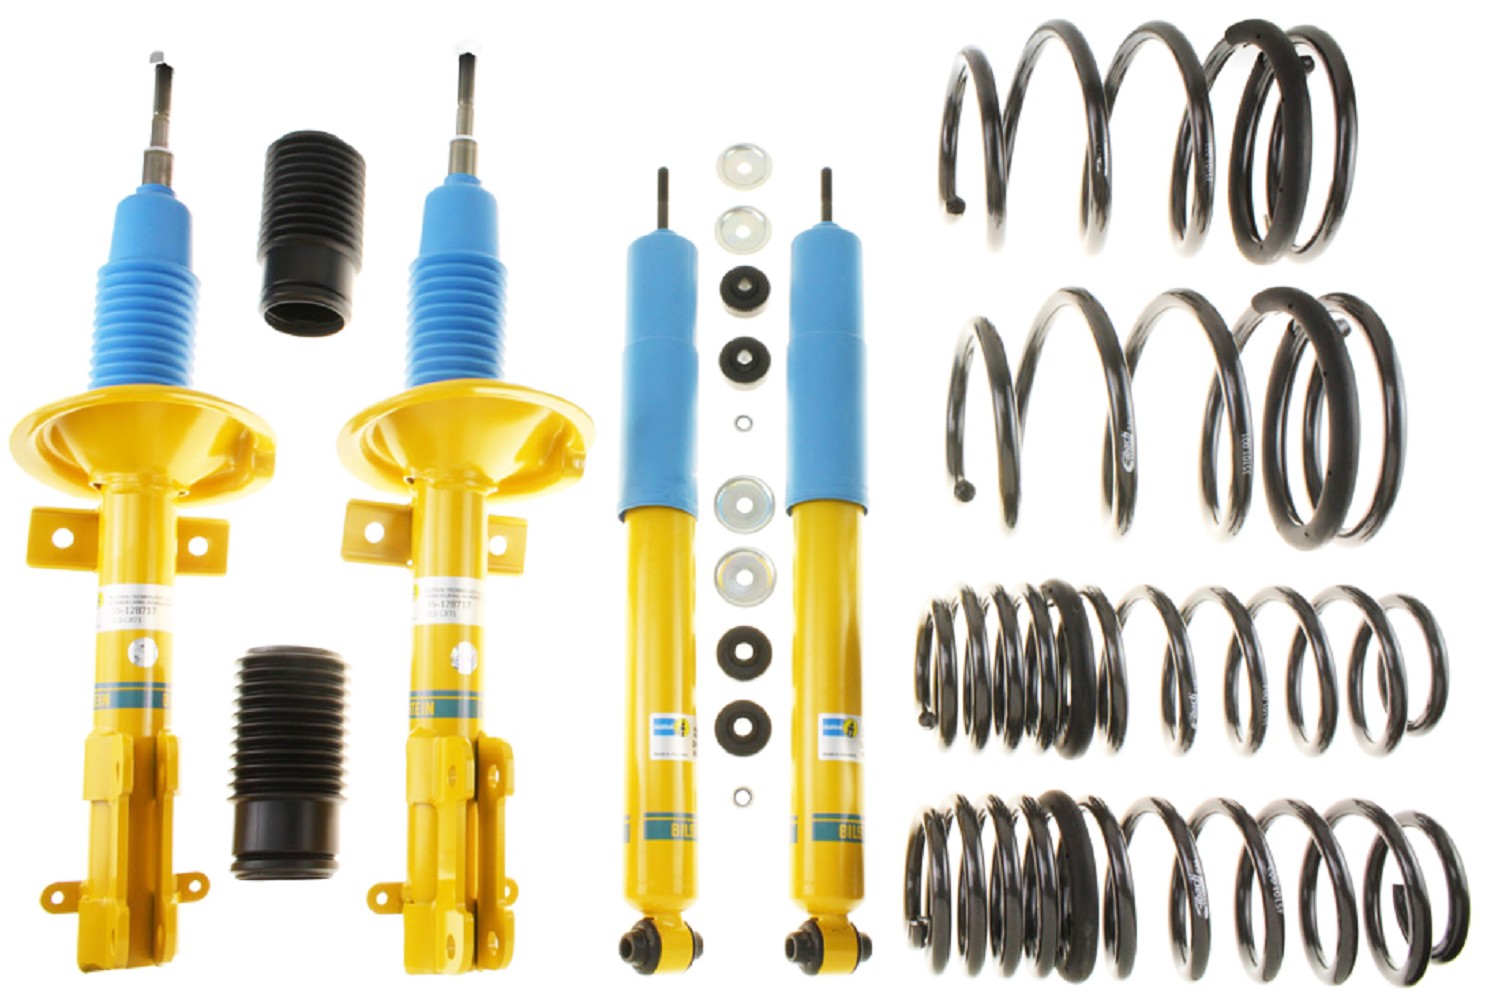 Bilstein ride-height lowering springs kit with shocks